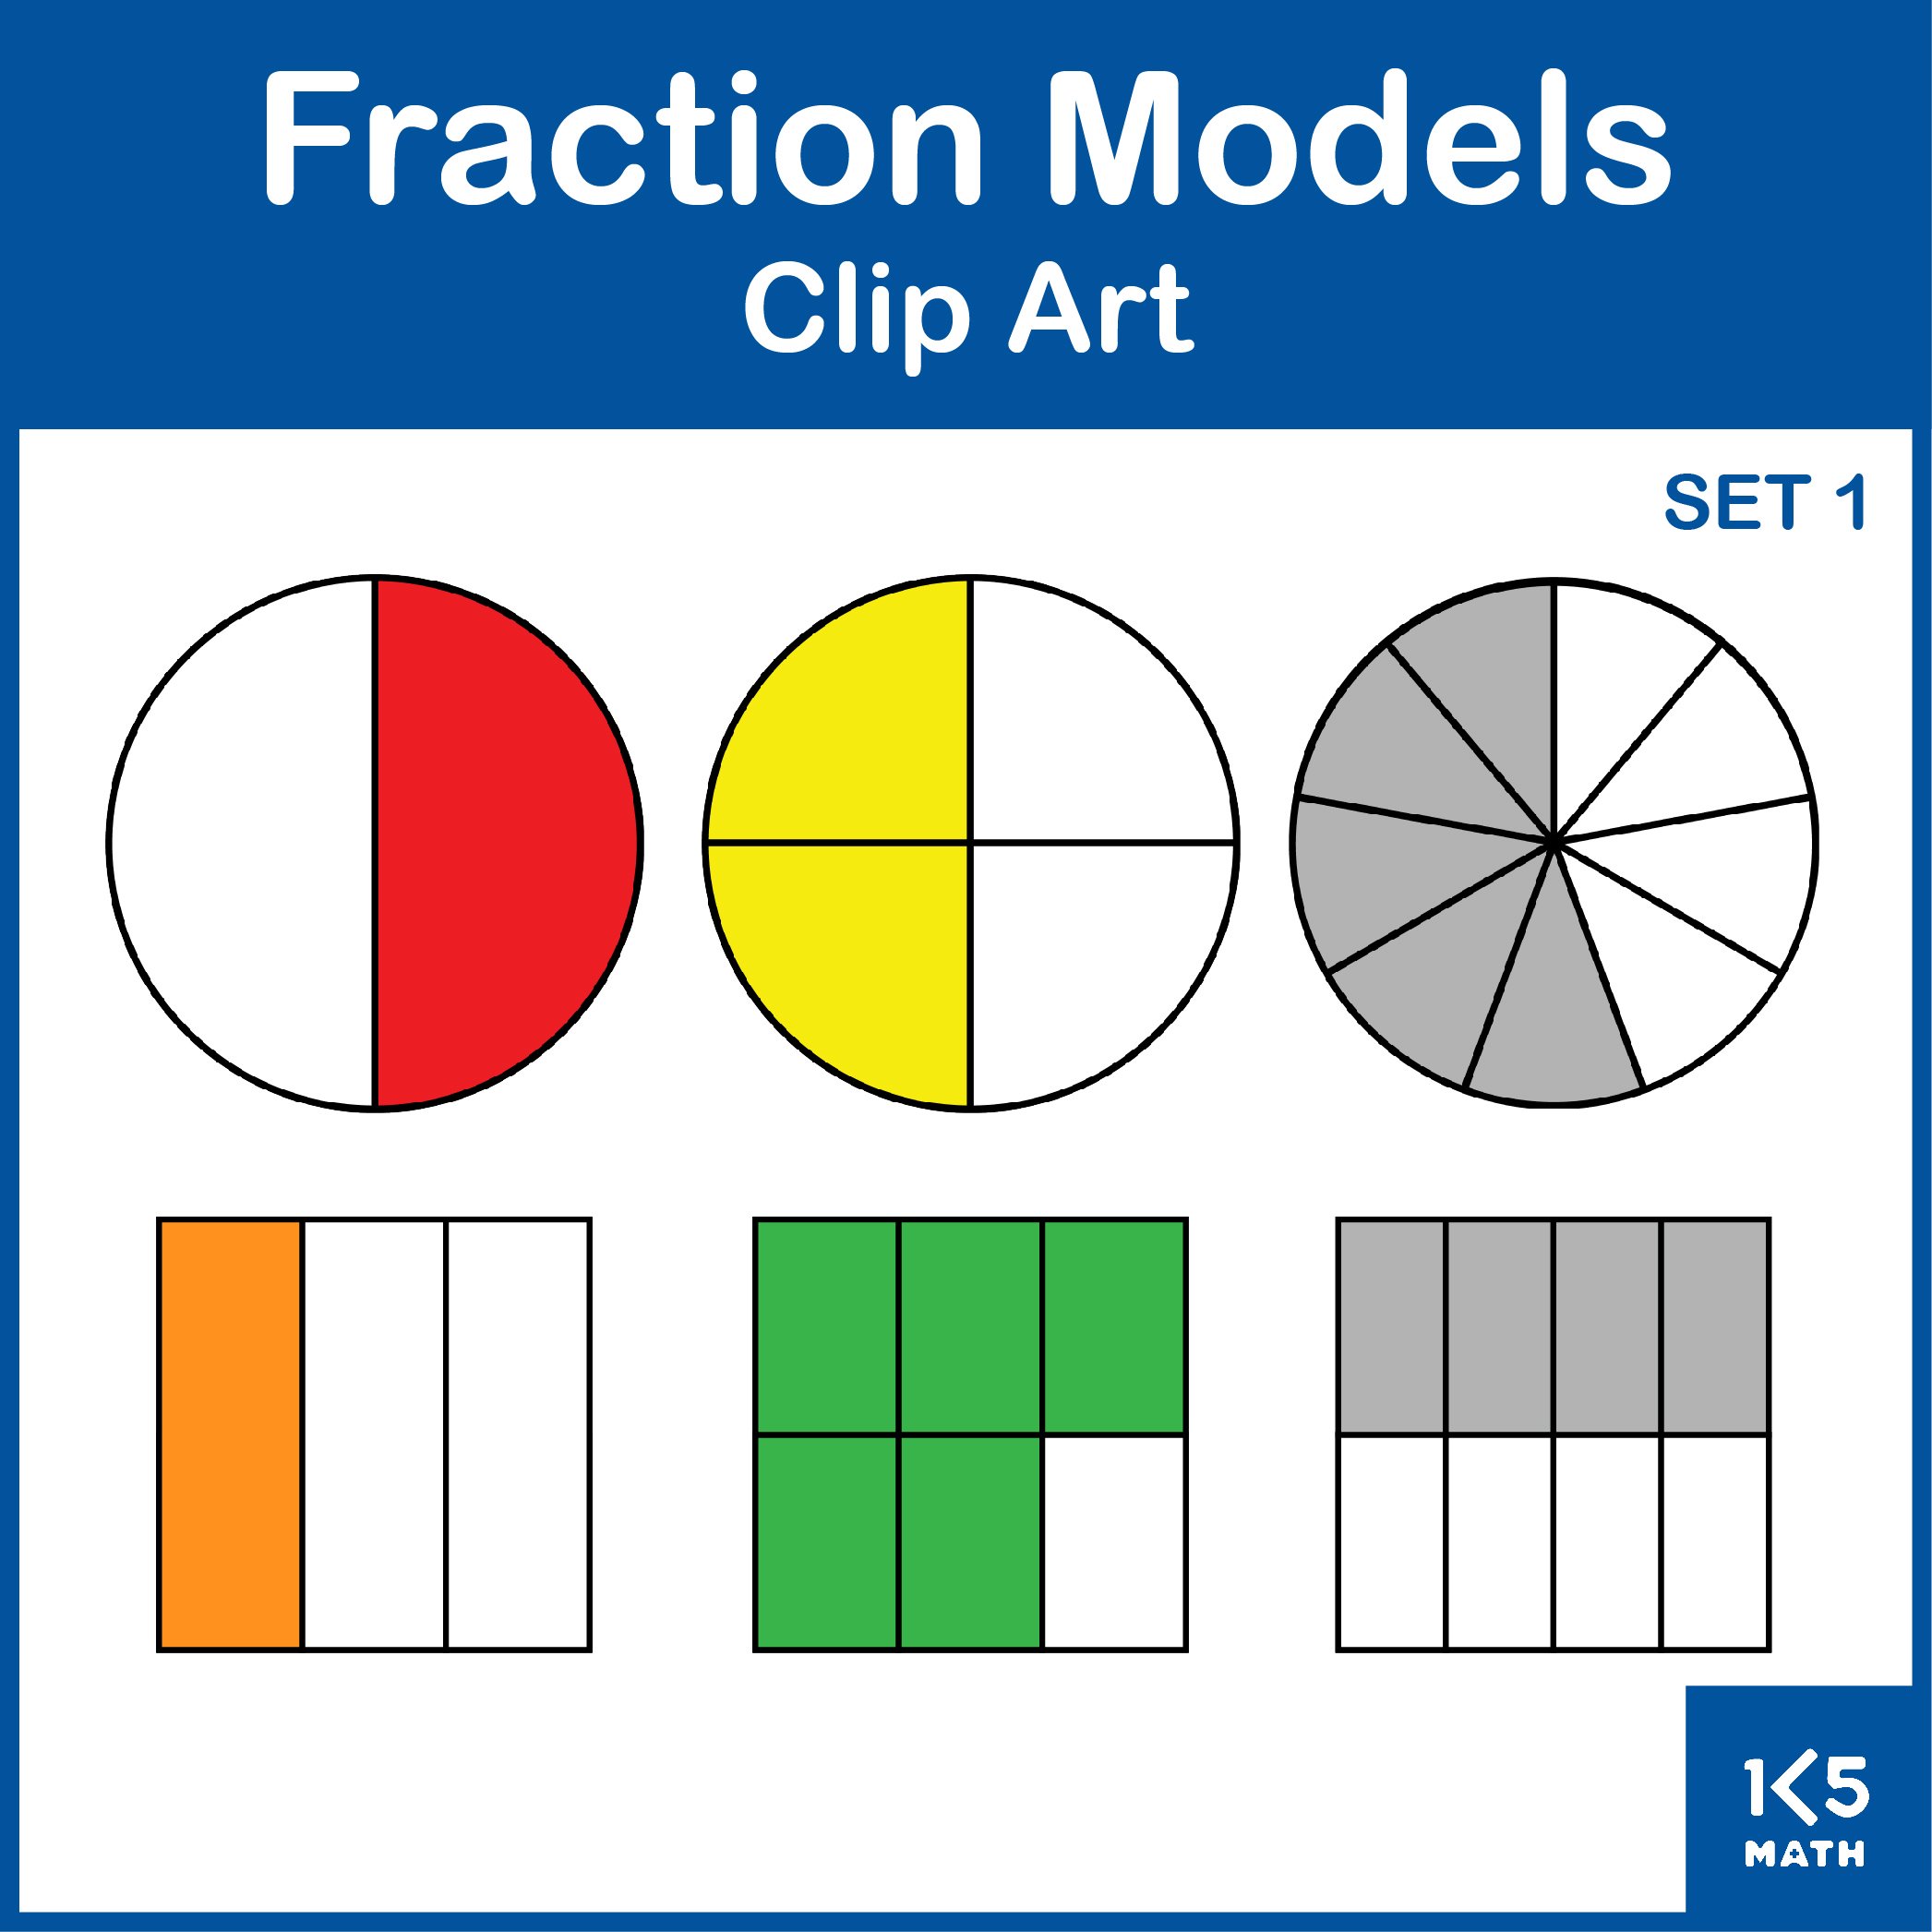 Fraction Models Clip Art: Set 1